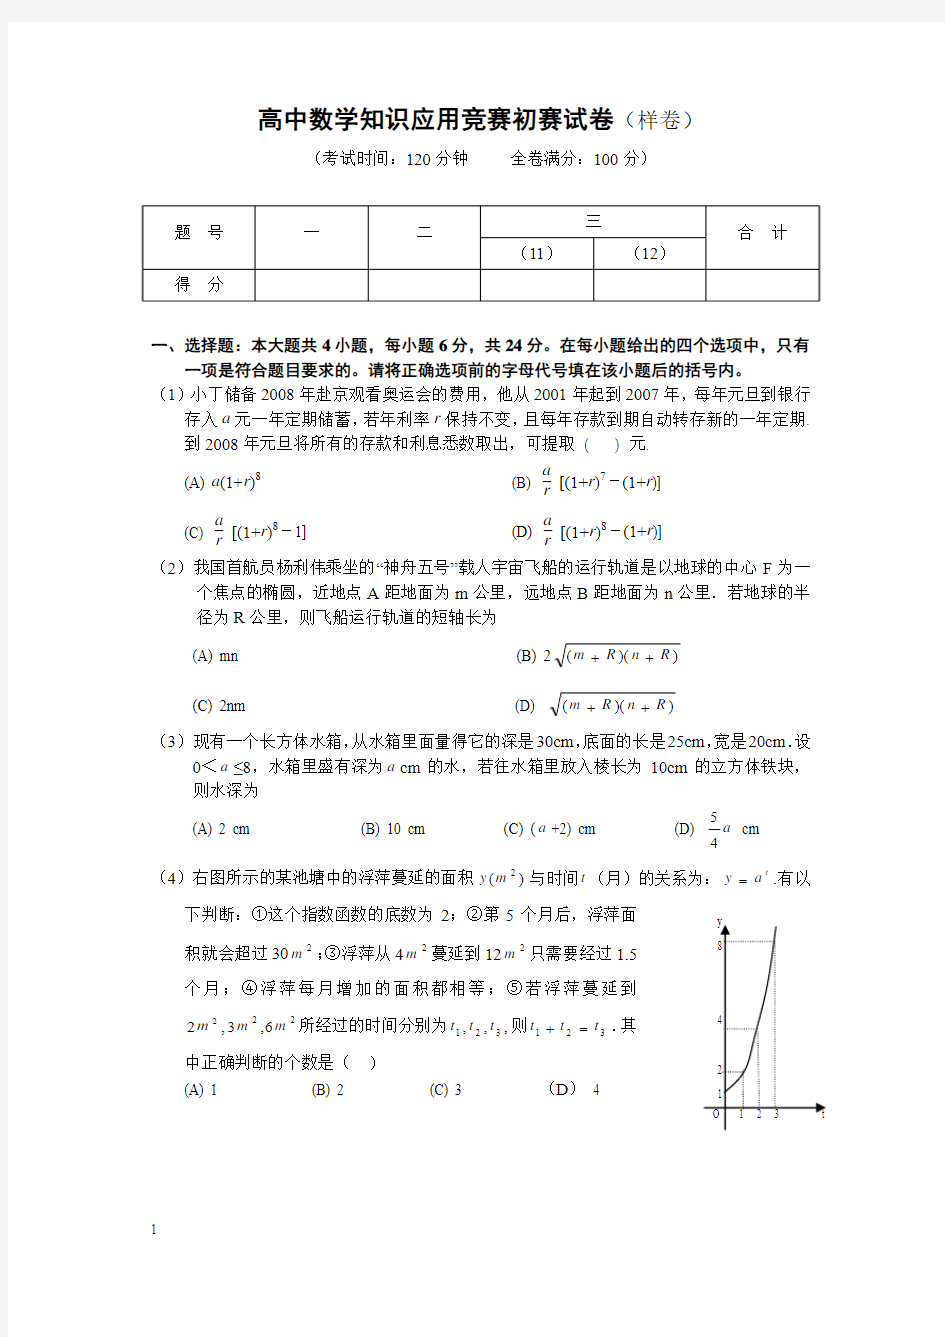 高中数学知识应用竞赛初赛试题样卷及答案201338